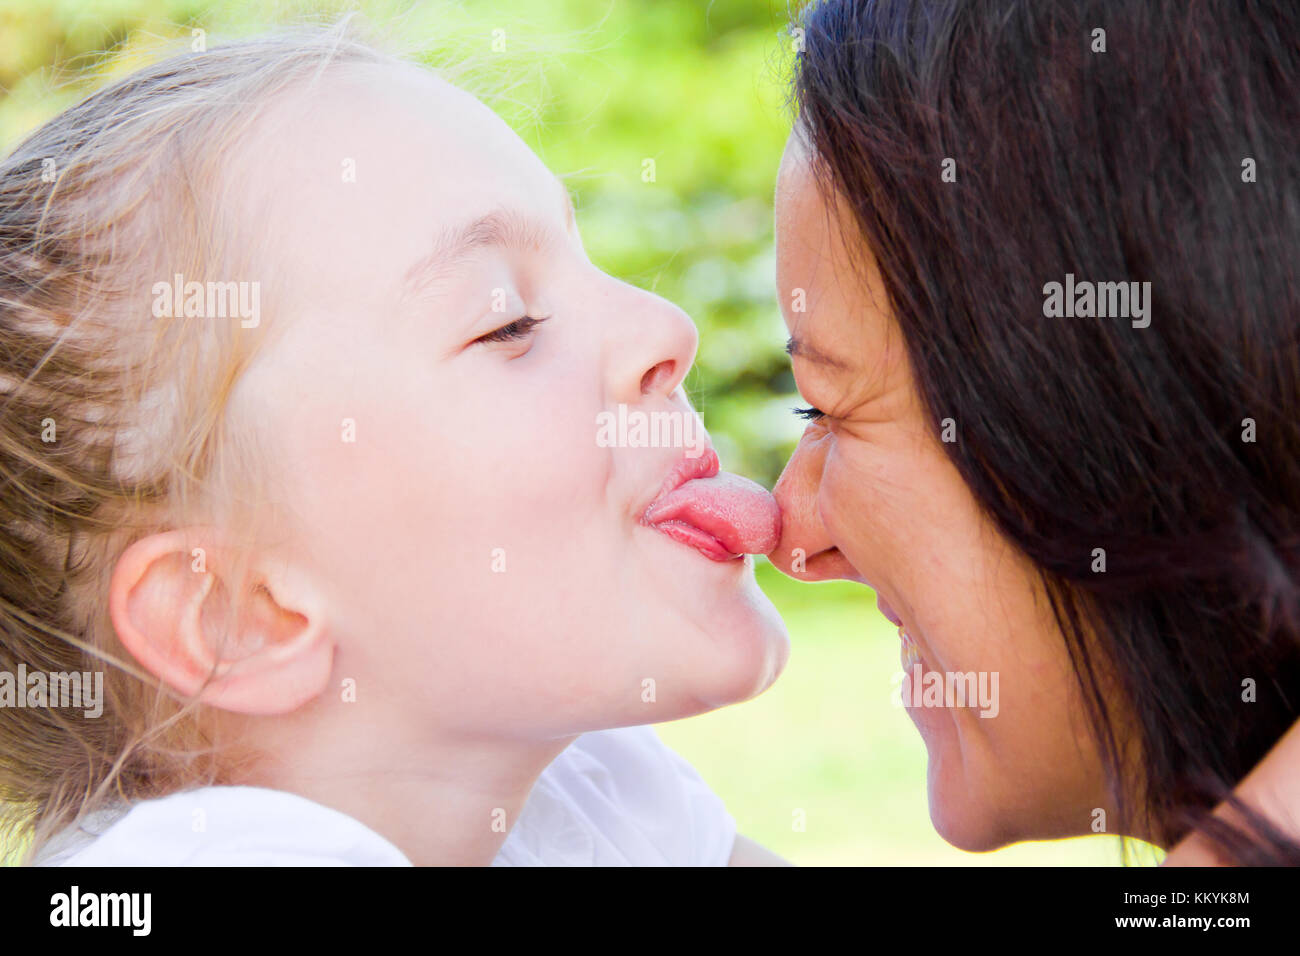 Лижет родной маме. Мать целует дочь. Мама и дочь поцелуй с языком. Поцелуй мамы и дочери в губы. Мама целует дочку в губы.